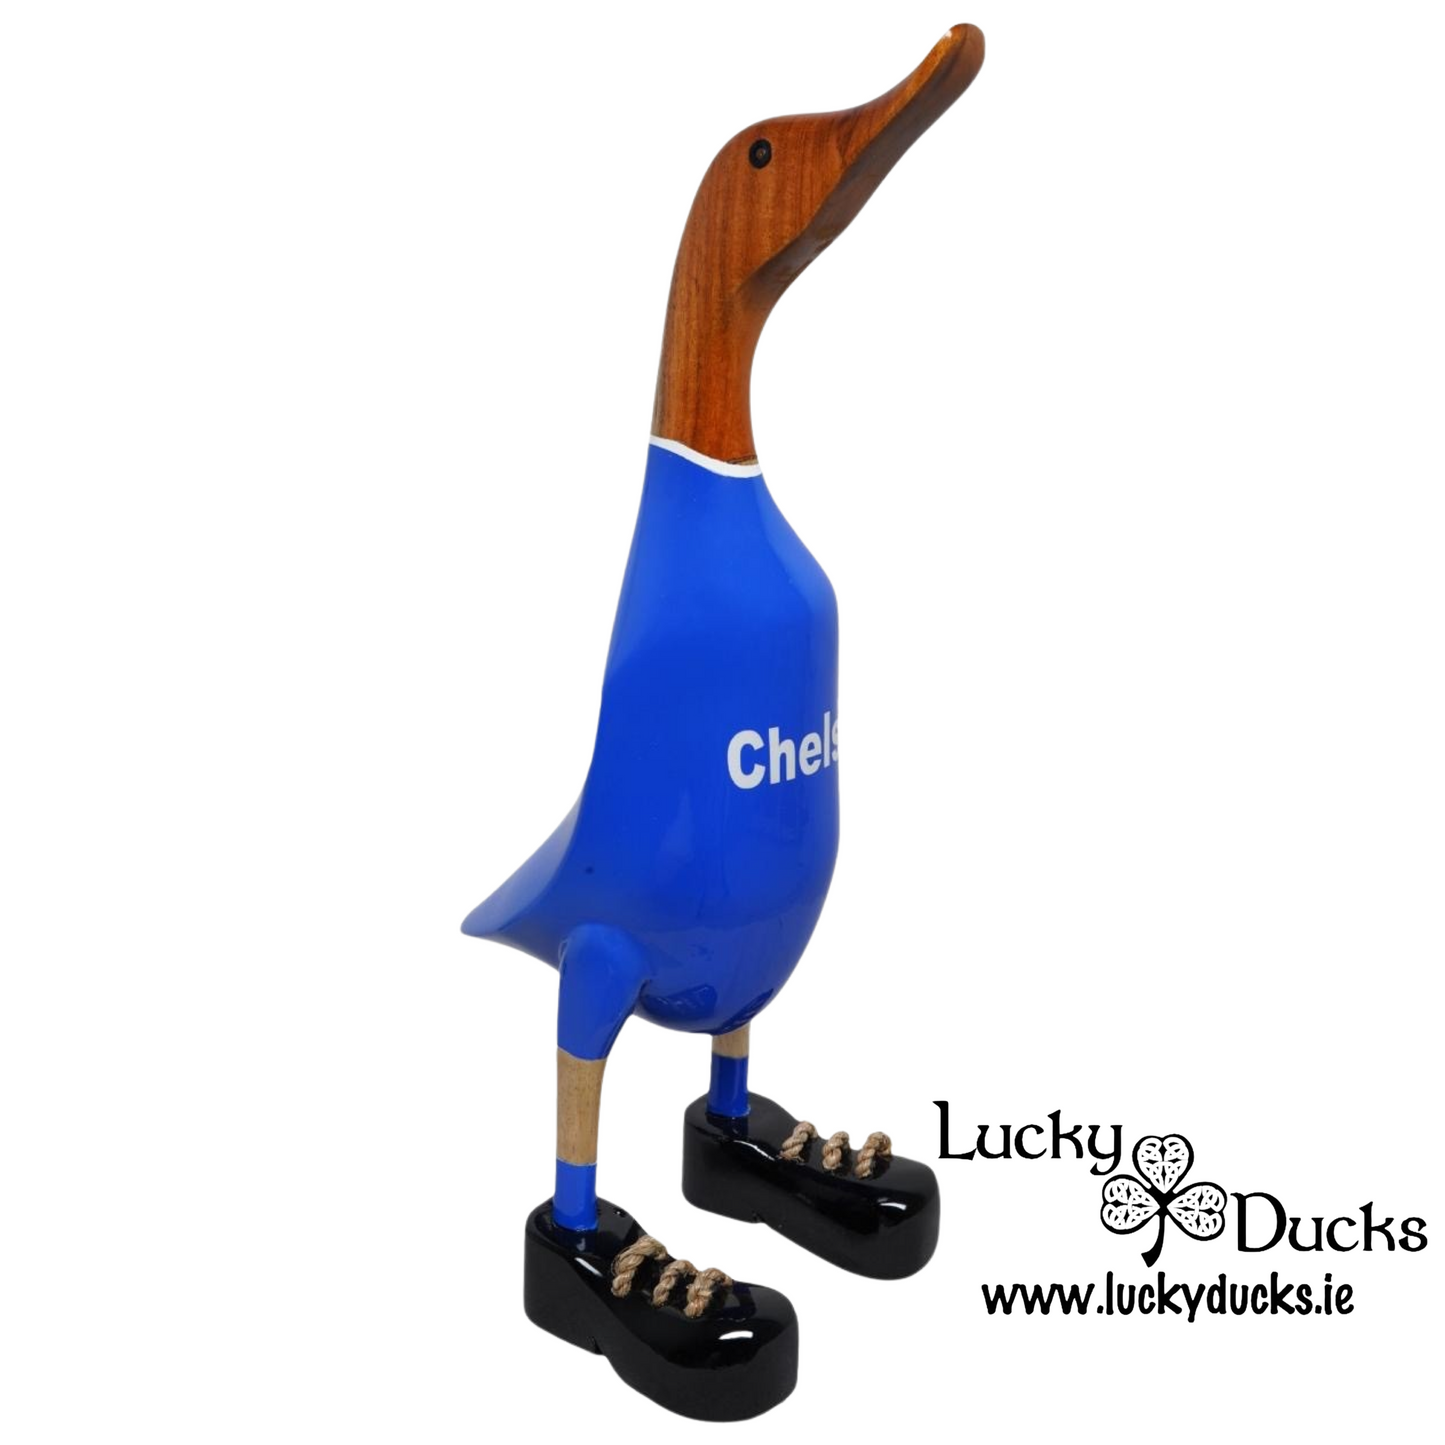 Chelsea Quack